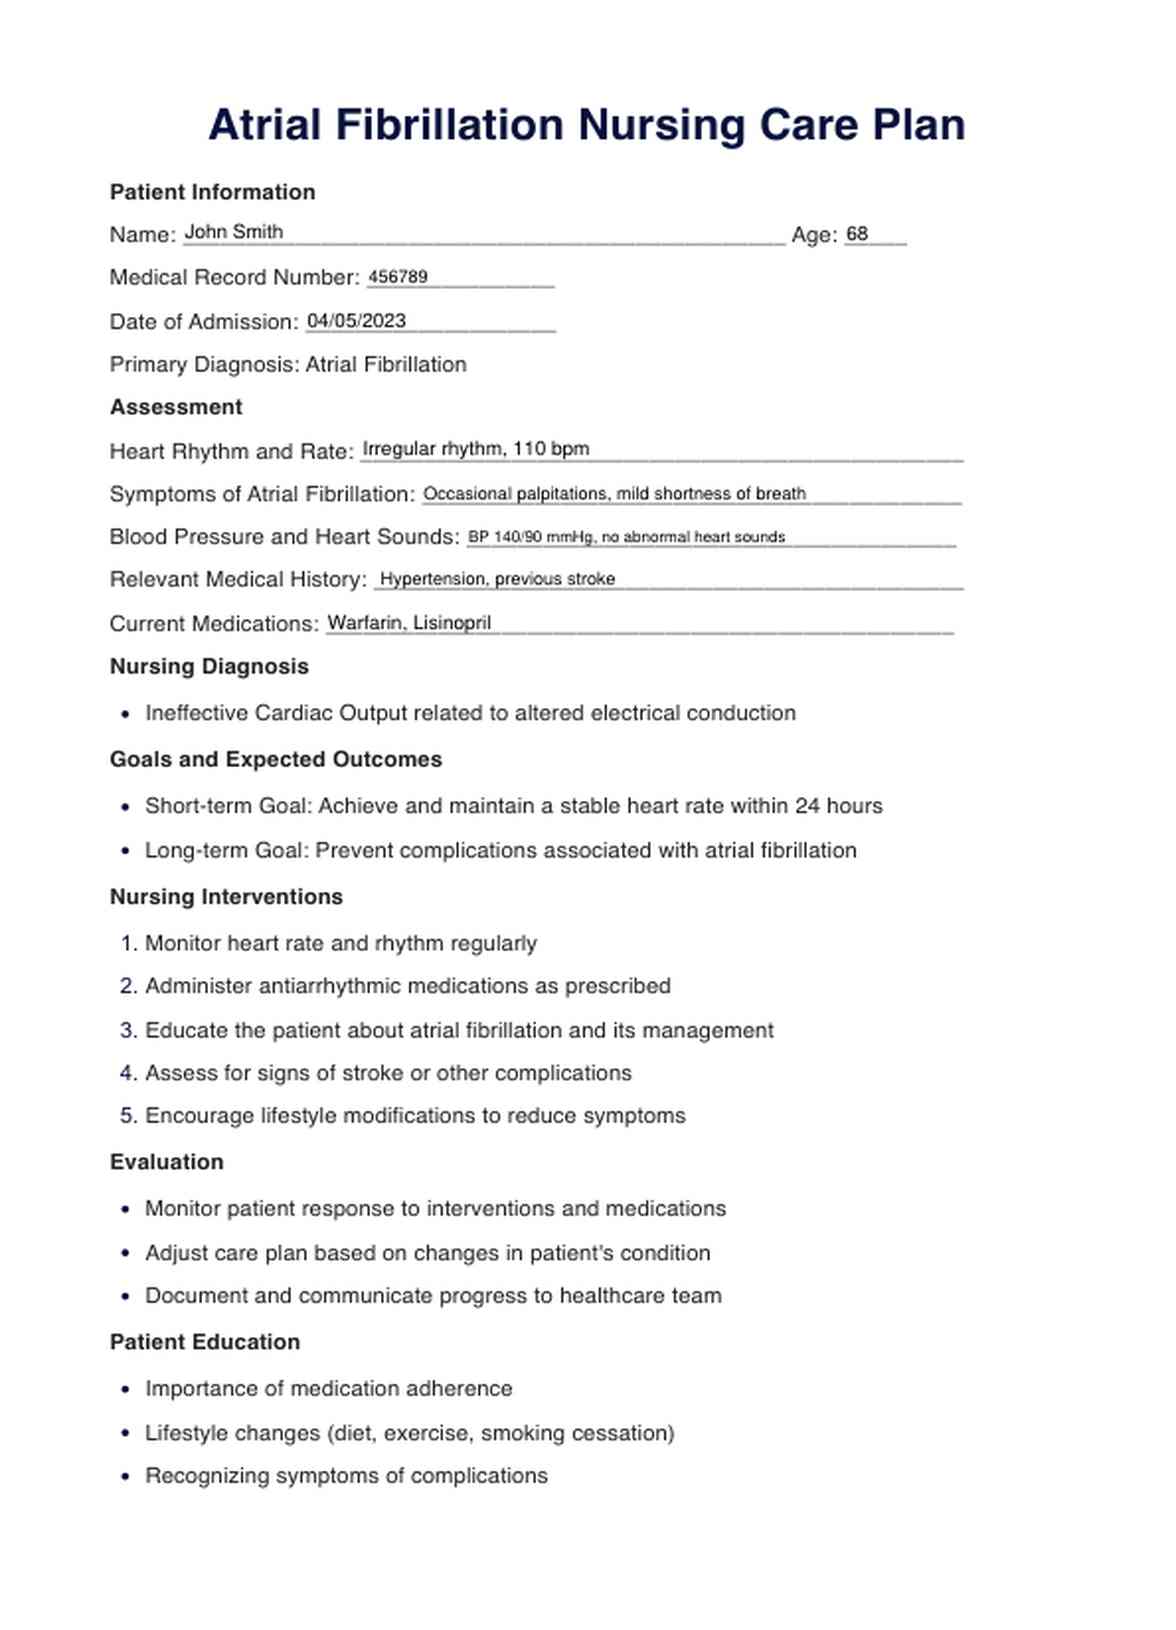 Plan de Cuidado de Fibrilación auricular PDF Example